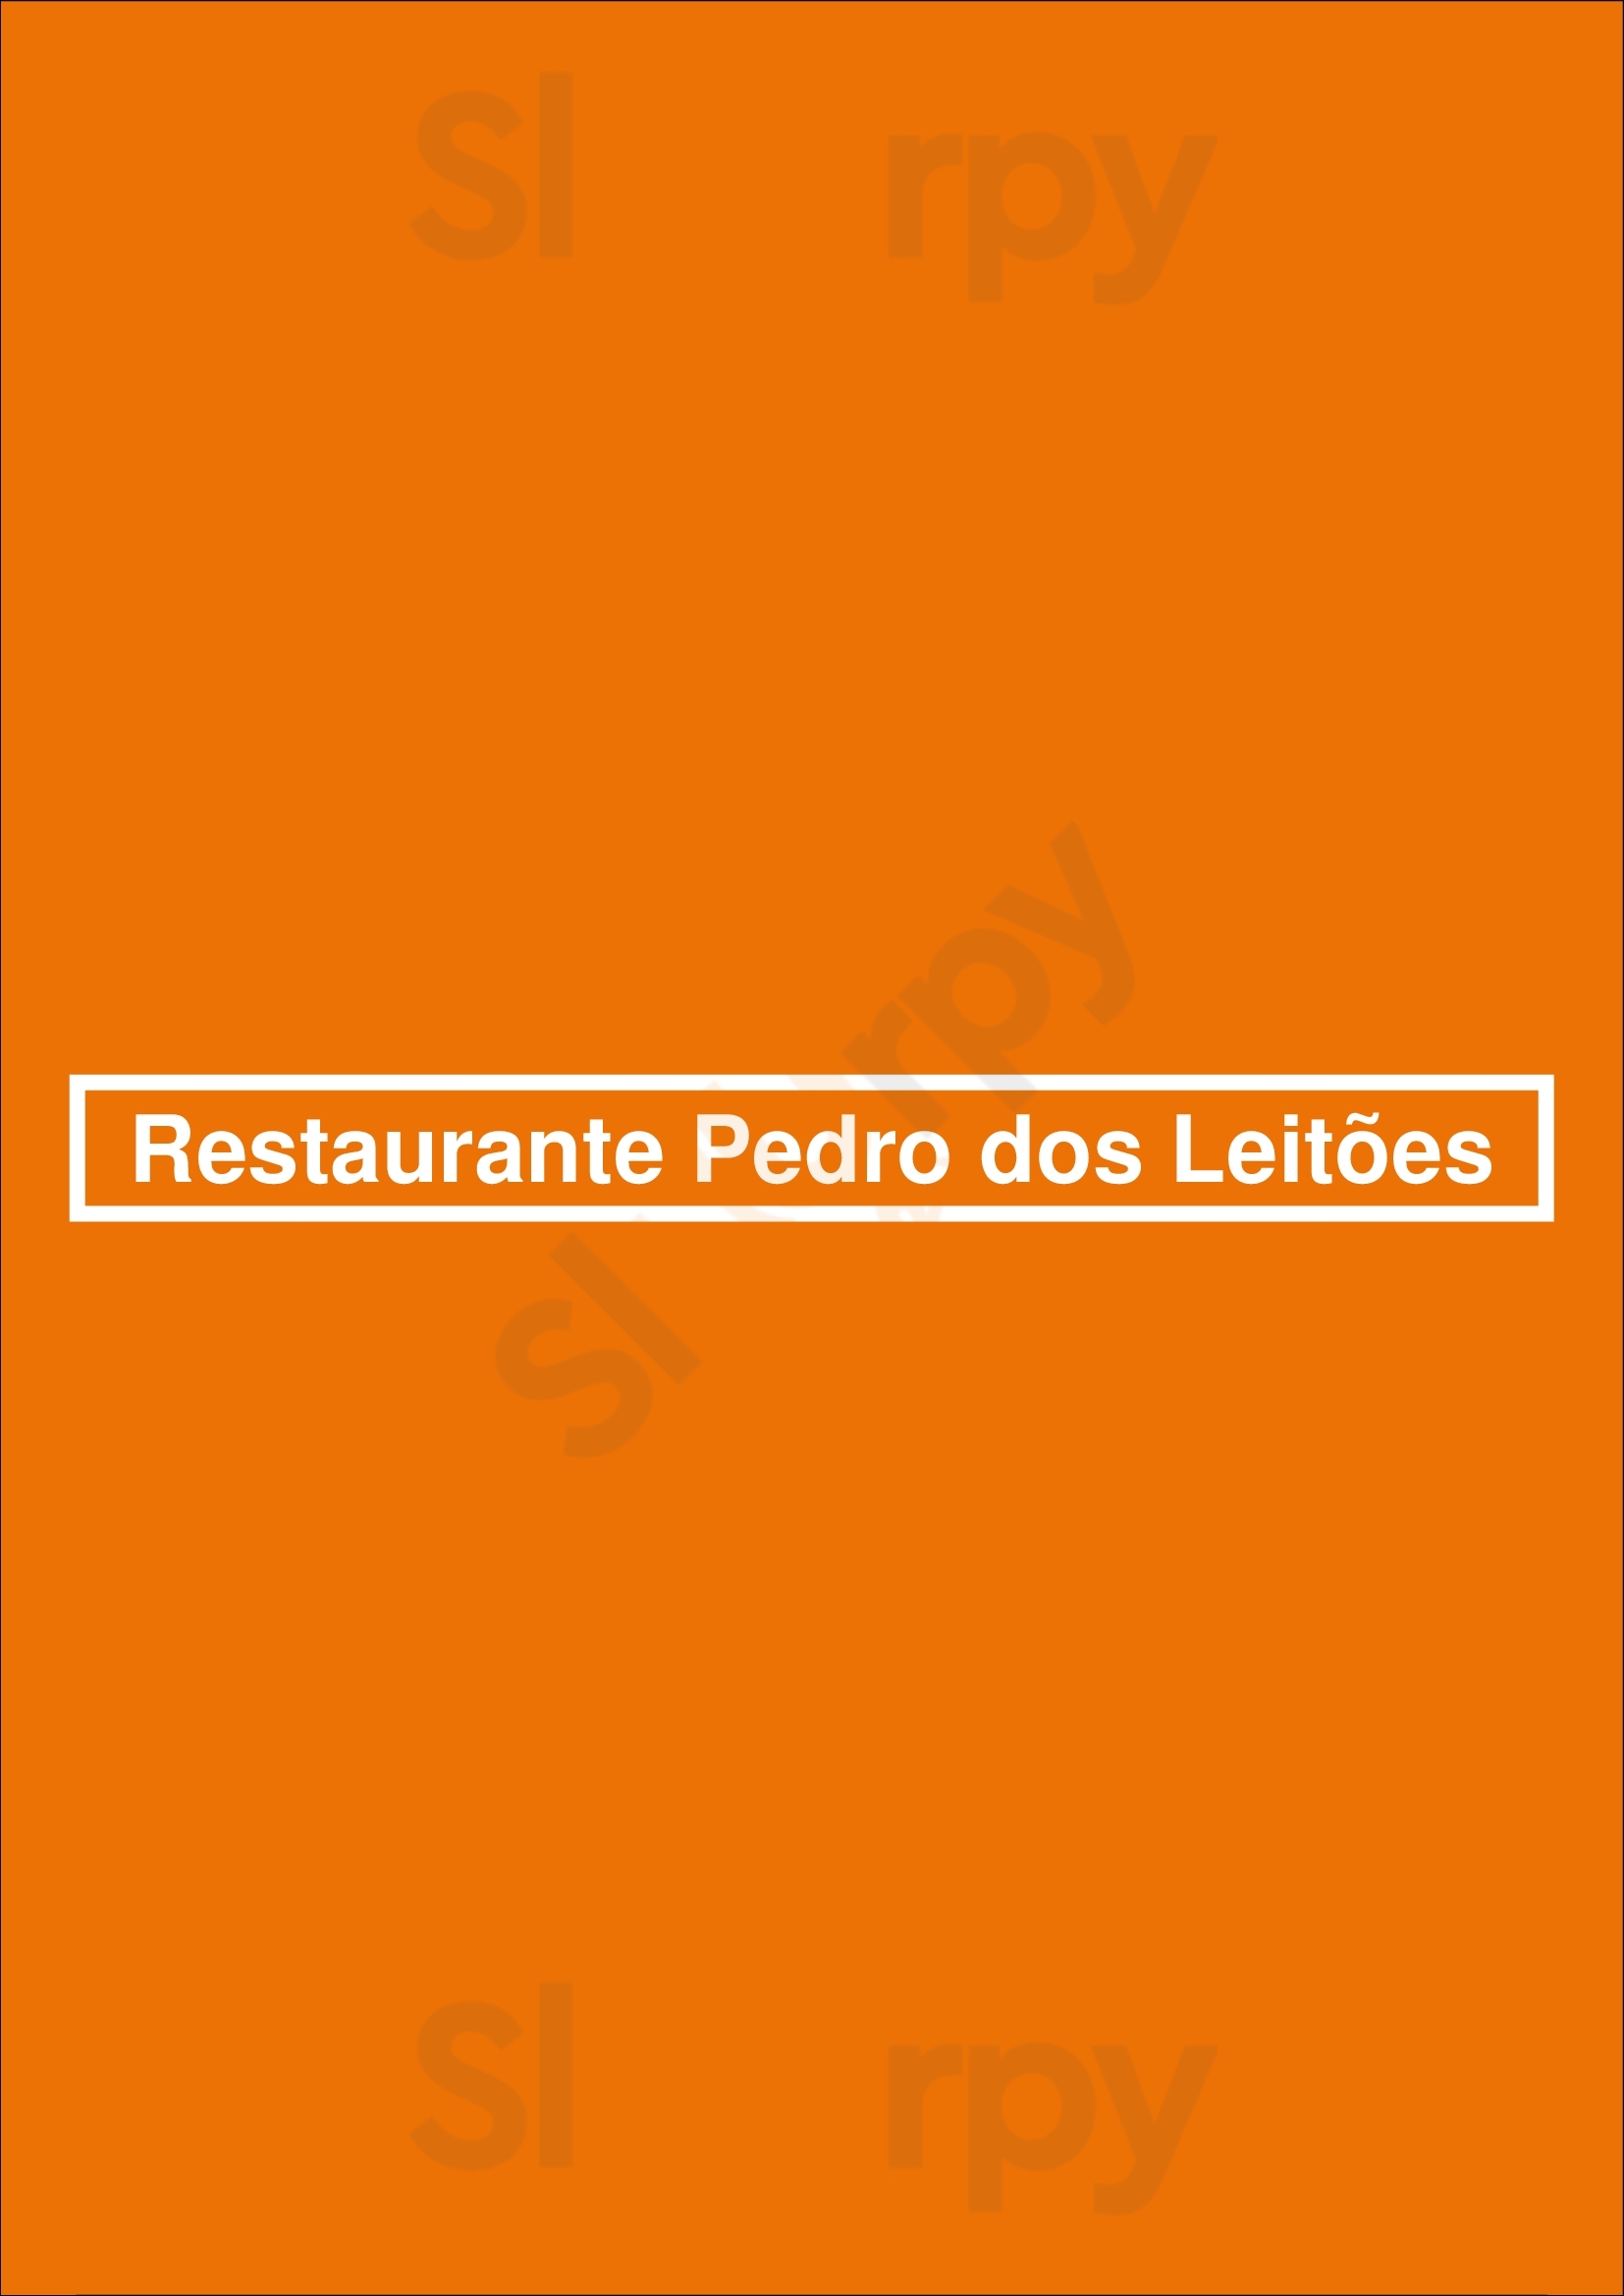 Restaurante Pedro Dos Leitões Mealhada Menu - 1